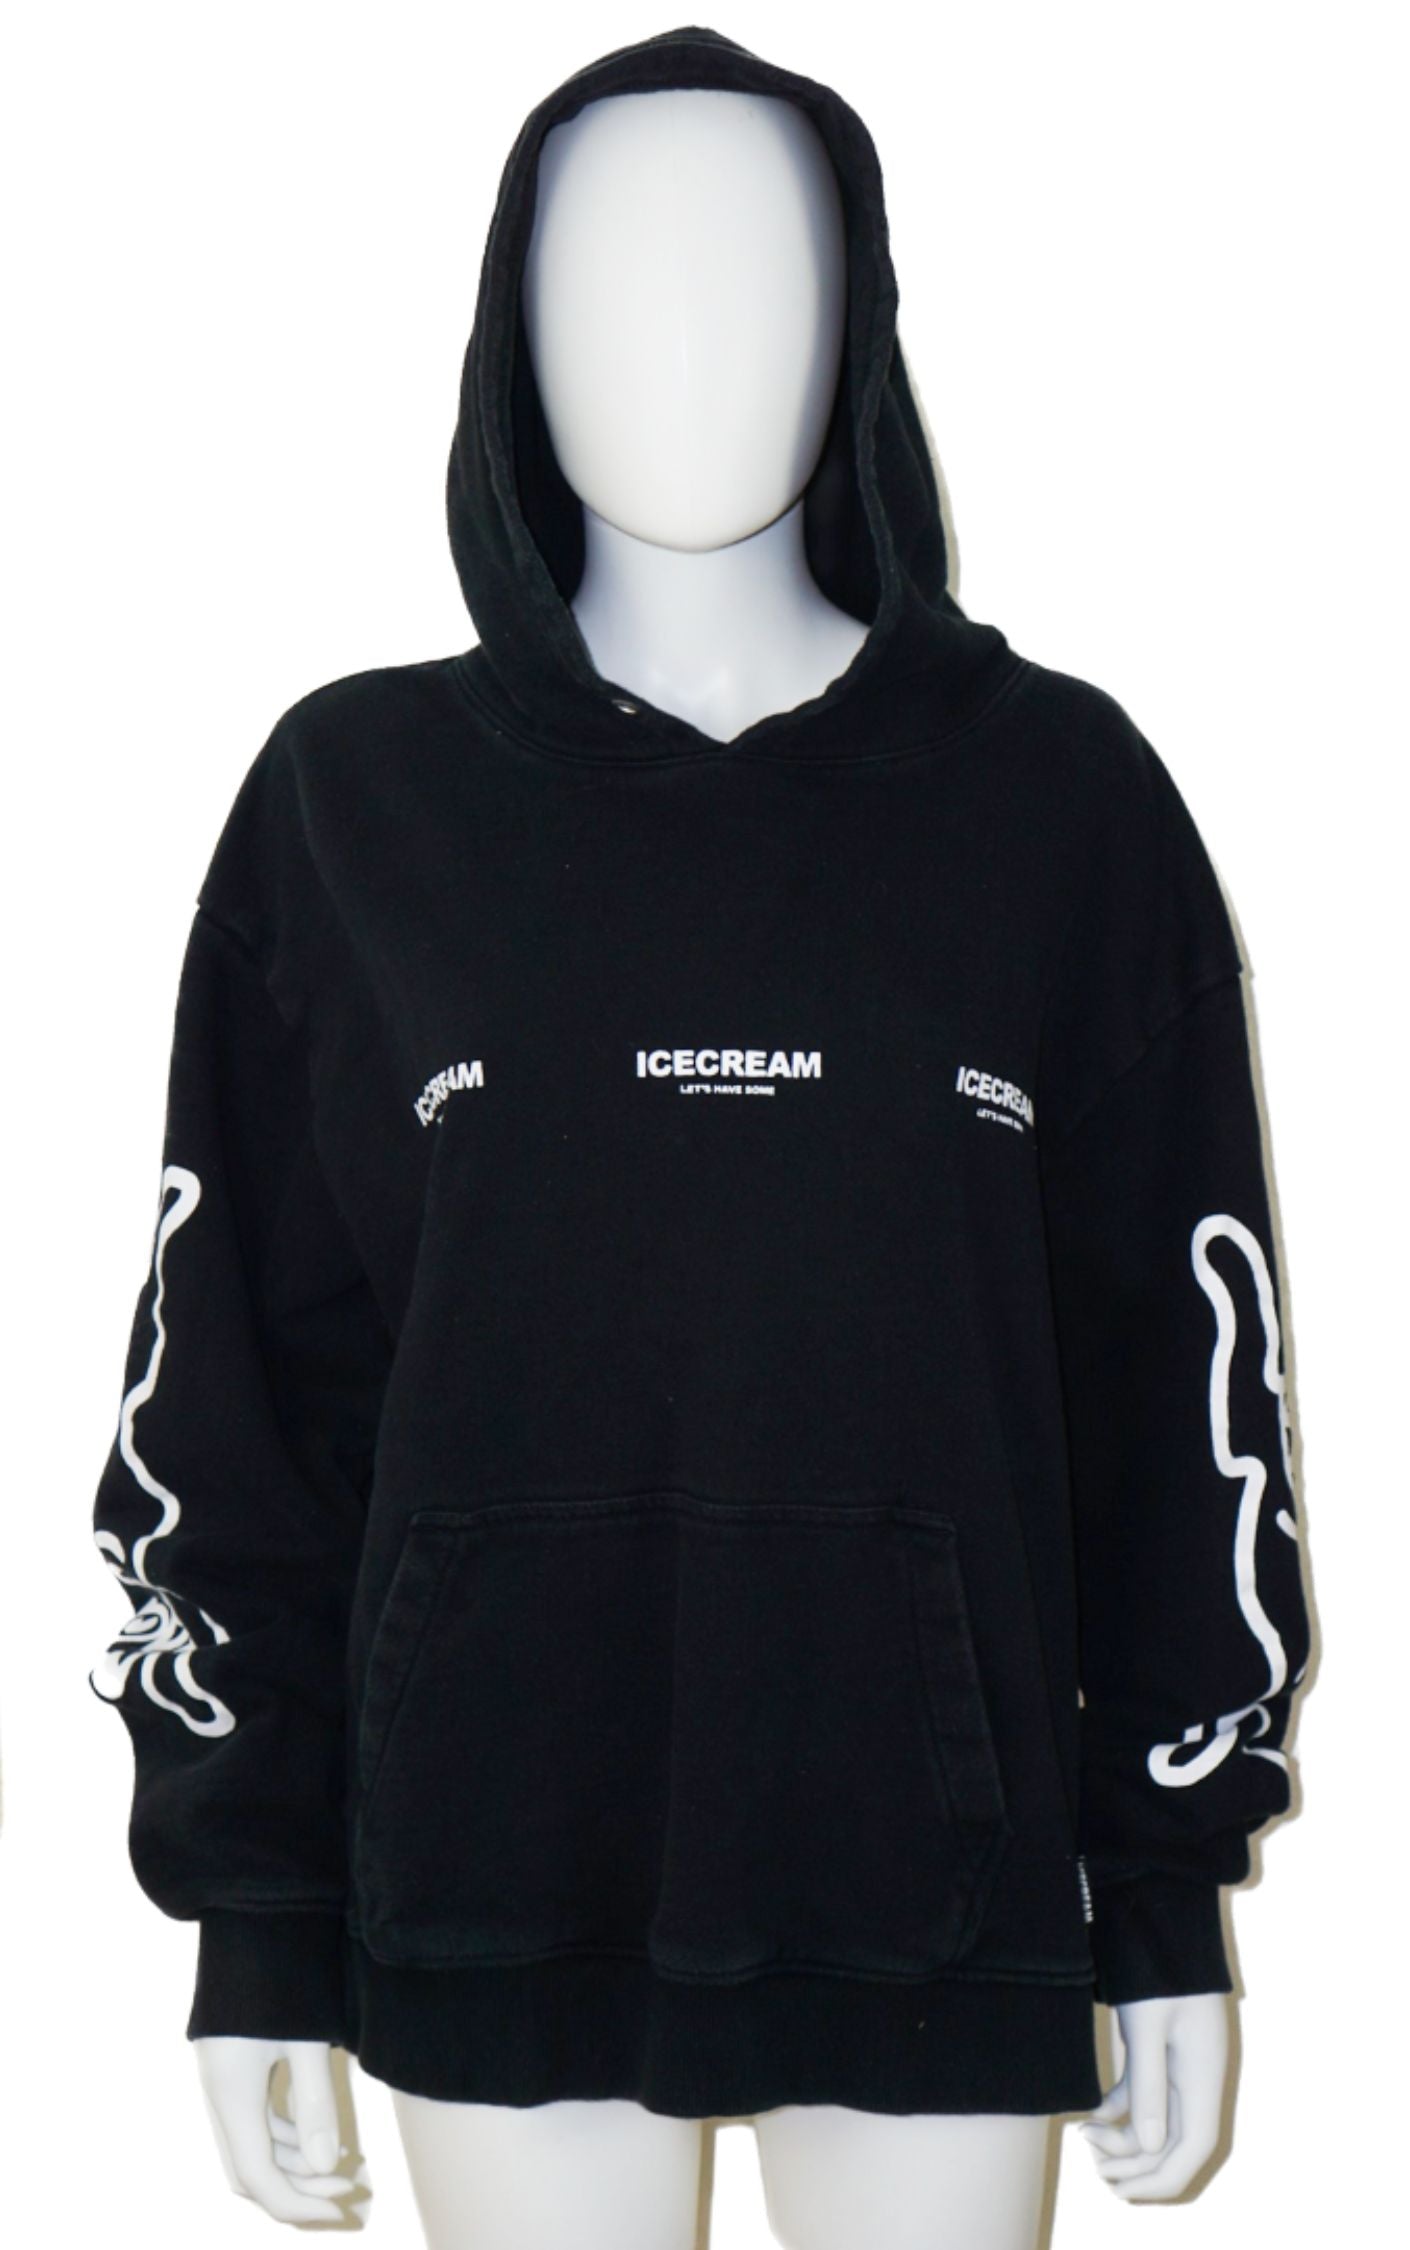 ICECREAM Streetwear Black Logo Printed Hoodie resellum